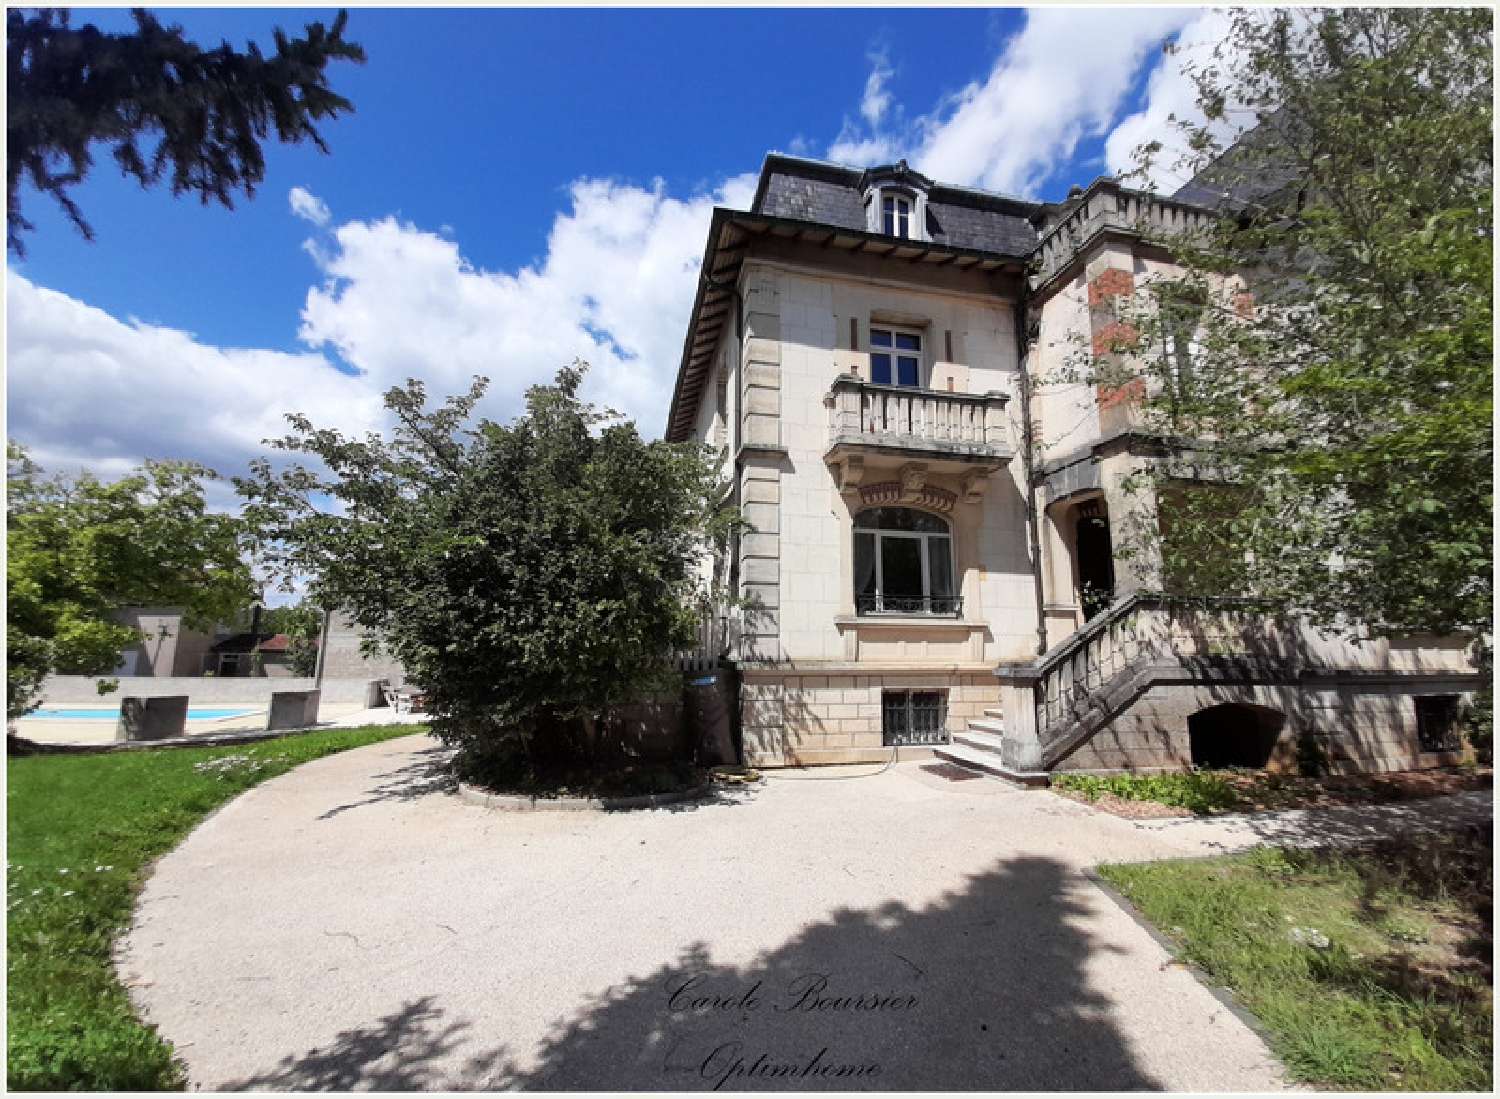  for sale house Liffol-le-Grand Vosges 1